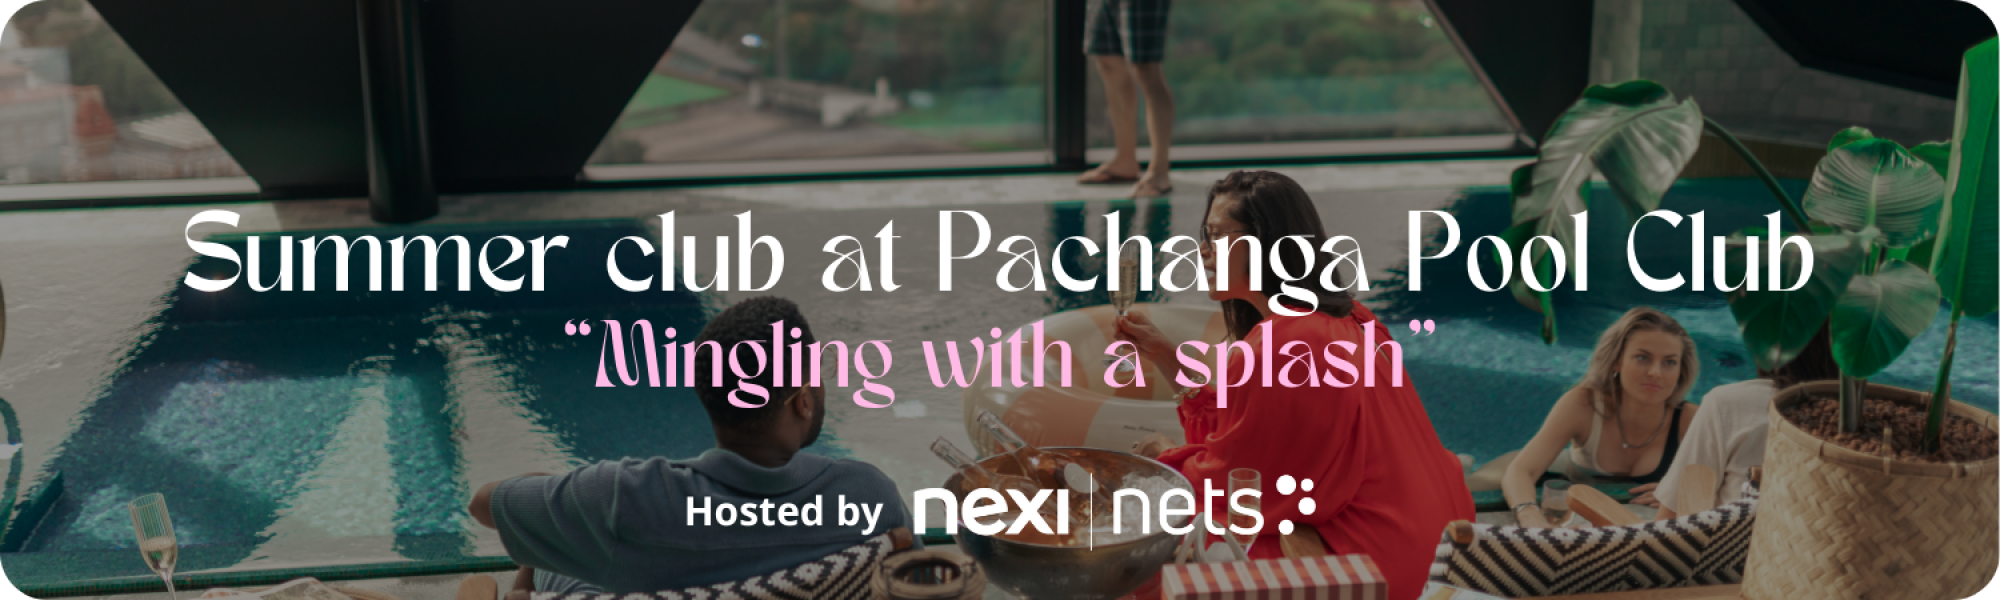 summer-club-pachanga-pool-club